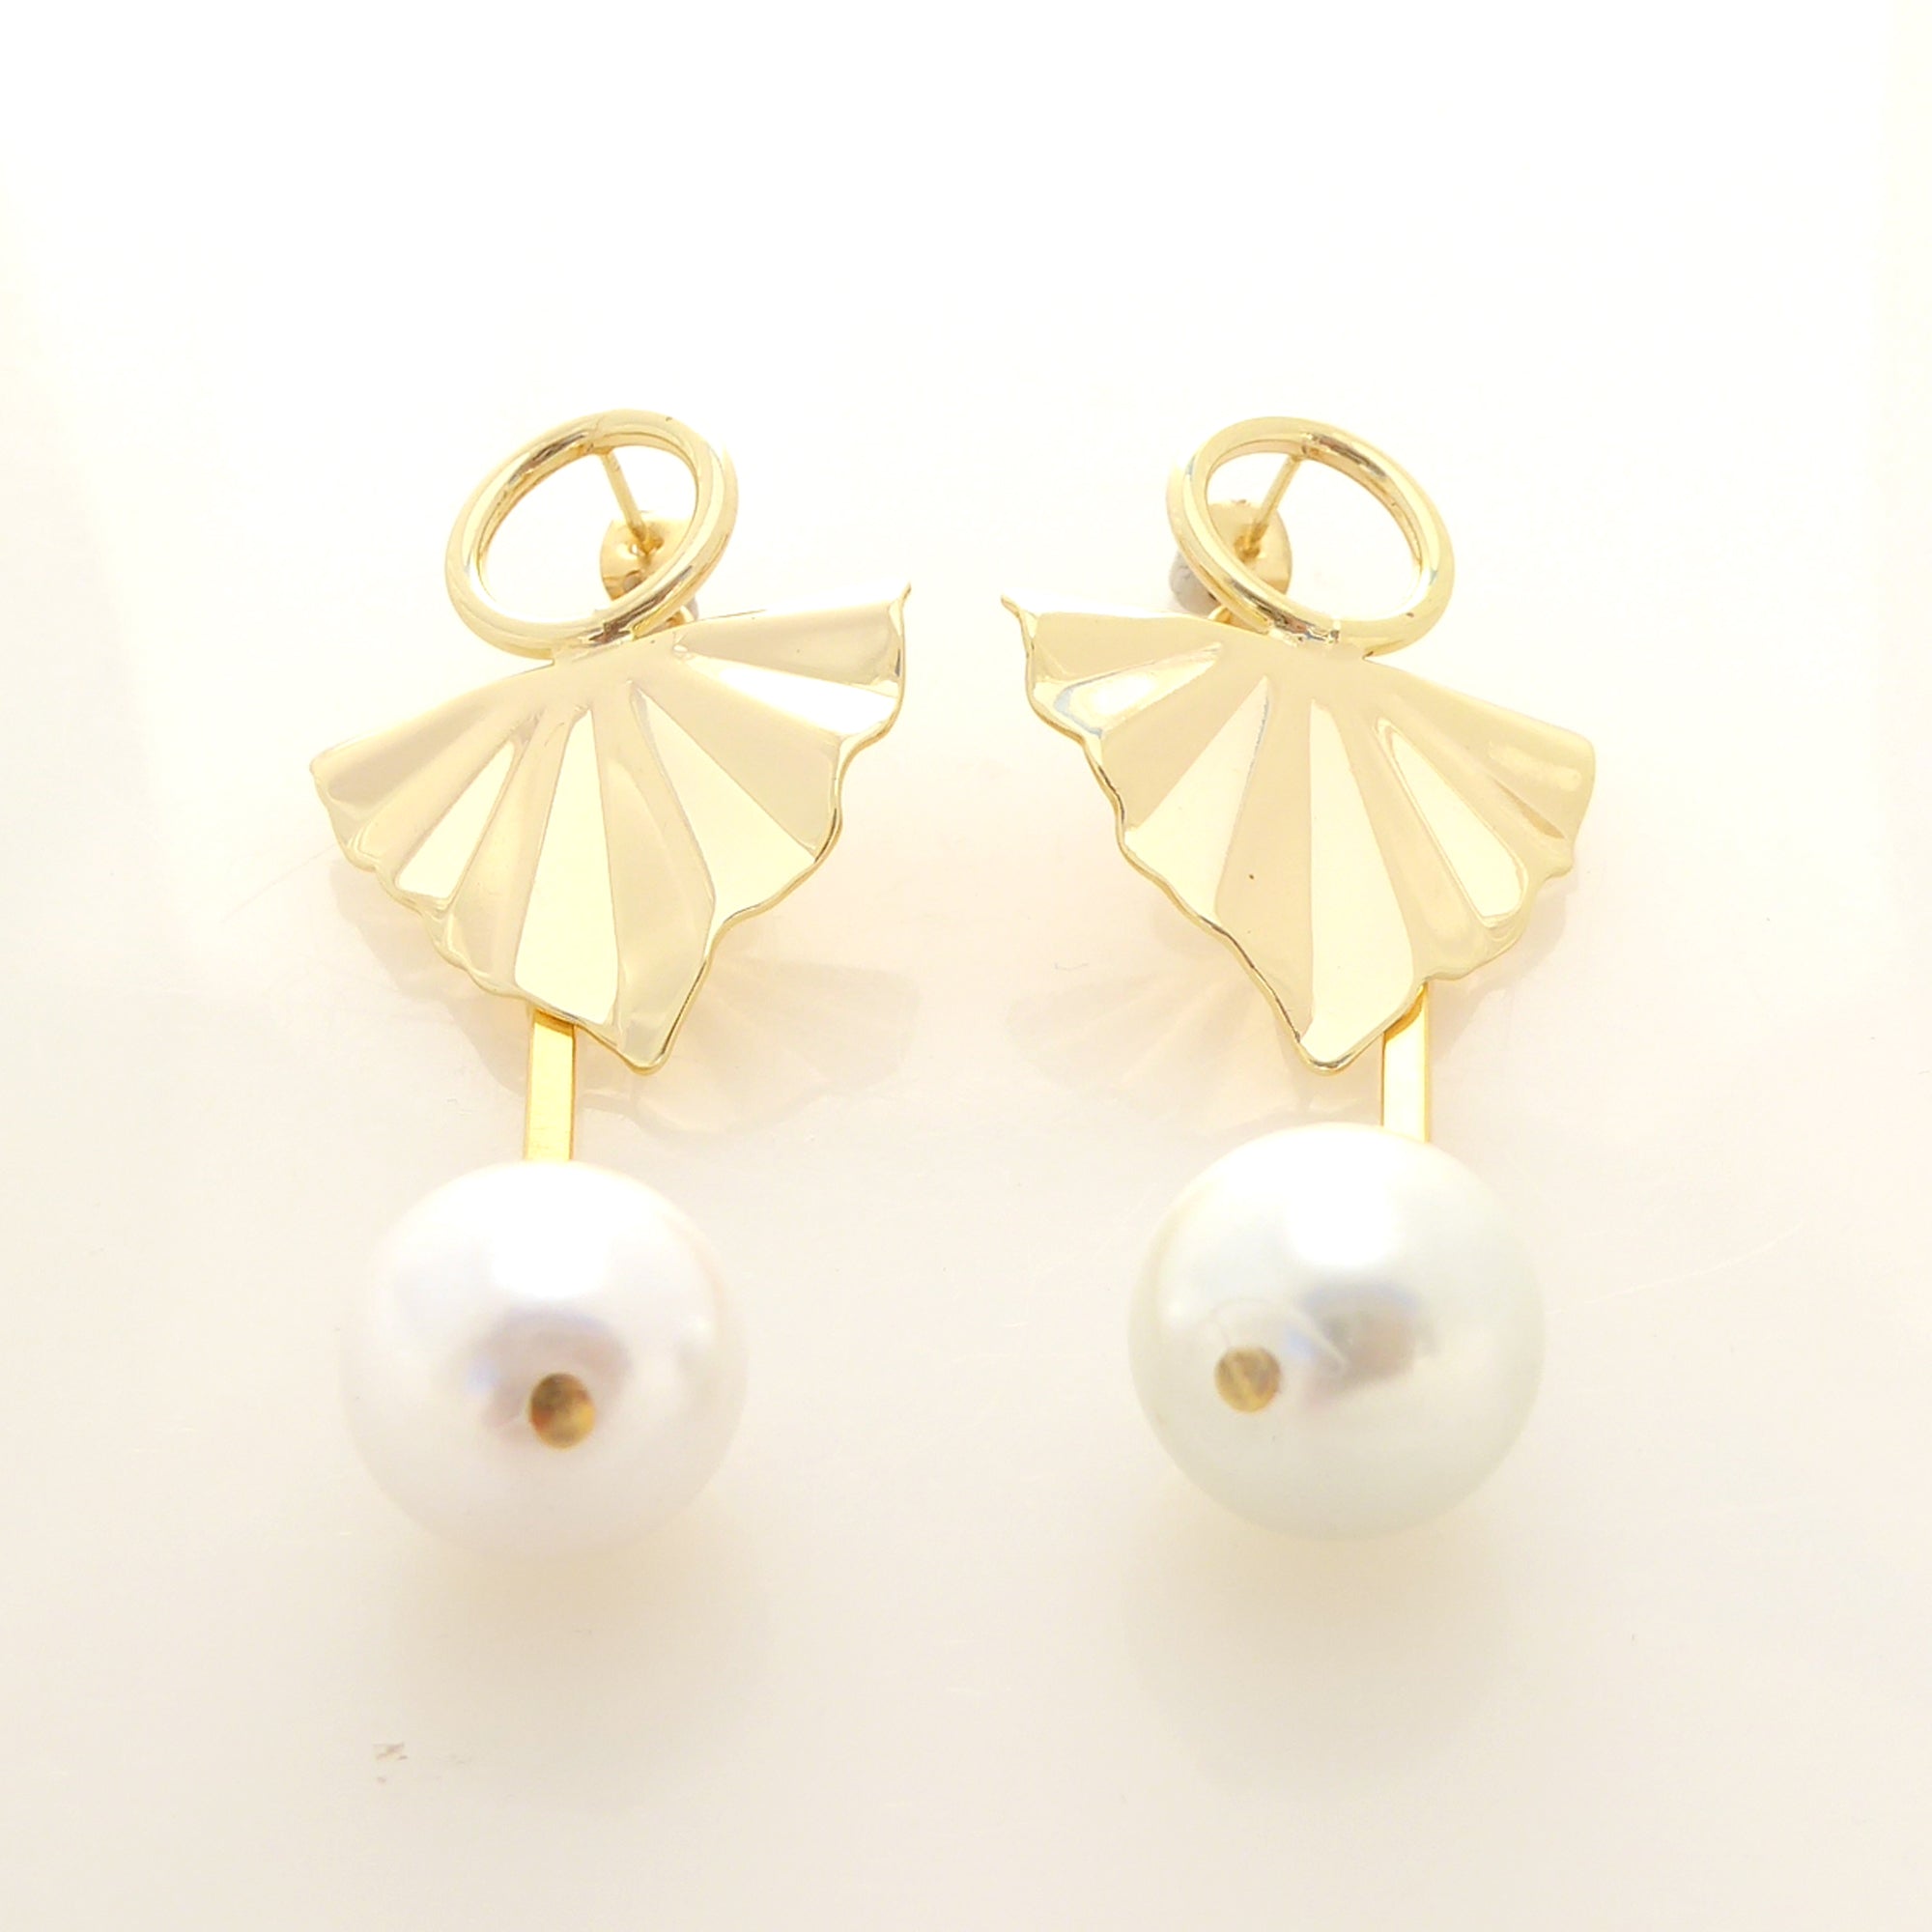 Kaia earrings